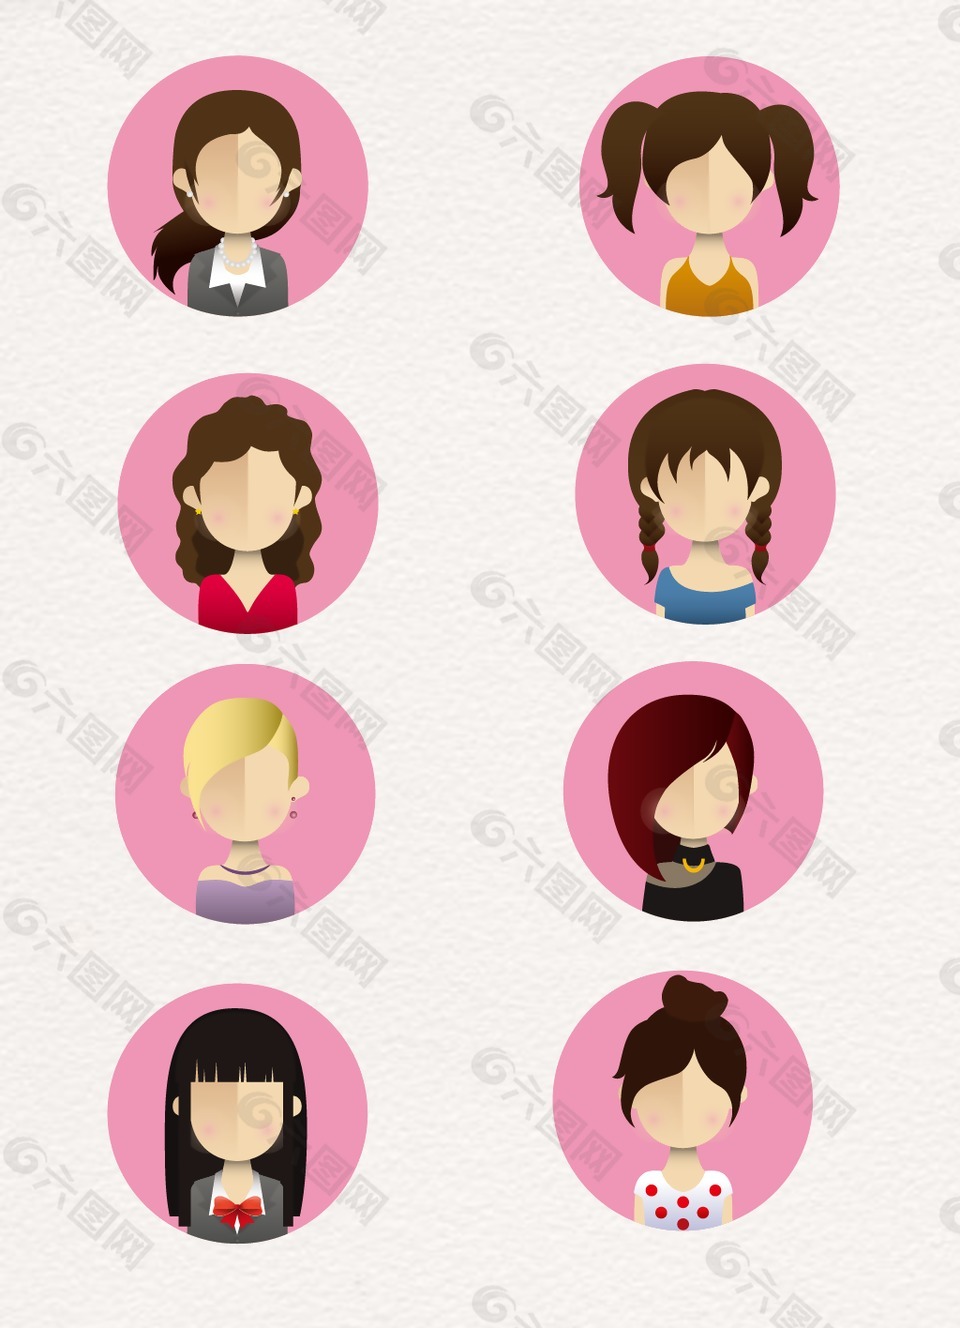 粉色女性人物头像设计